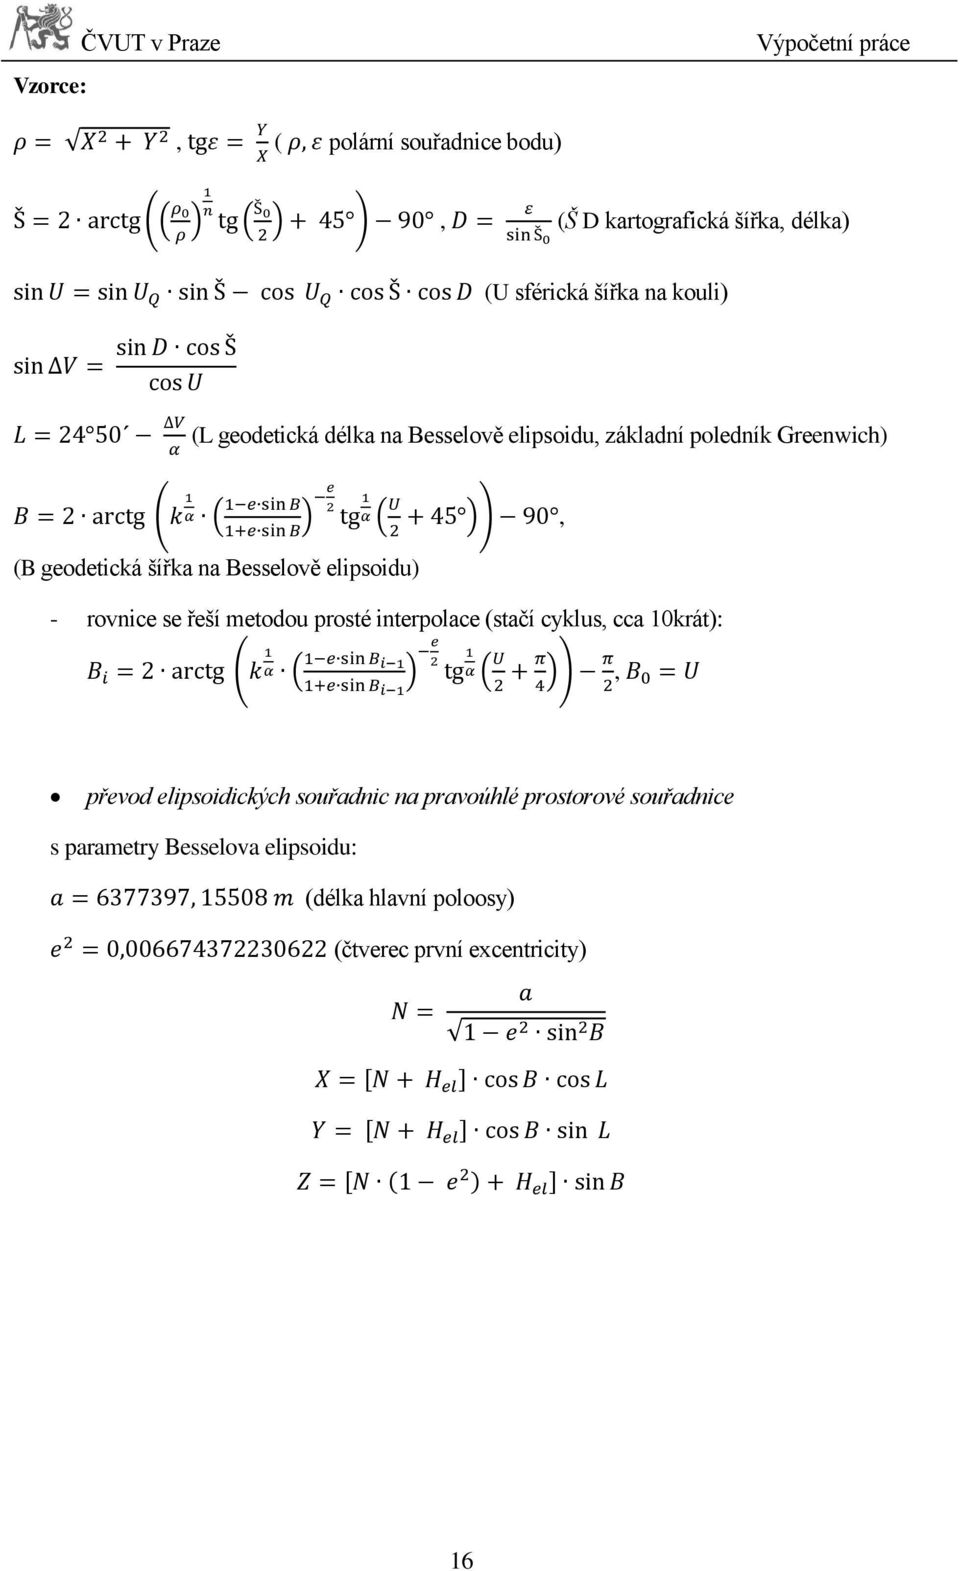 elipsoidu) - rovnice se řeší metodou prosté interpolace (stačí cyklus, cca 10krát):, převod elipsoidických souřadnic